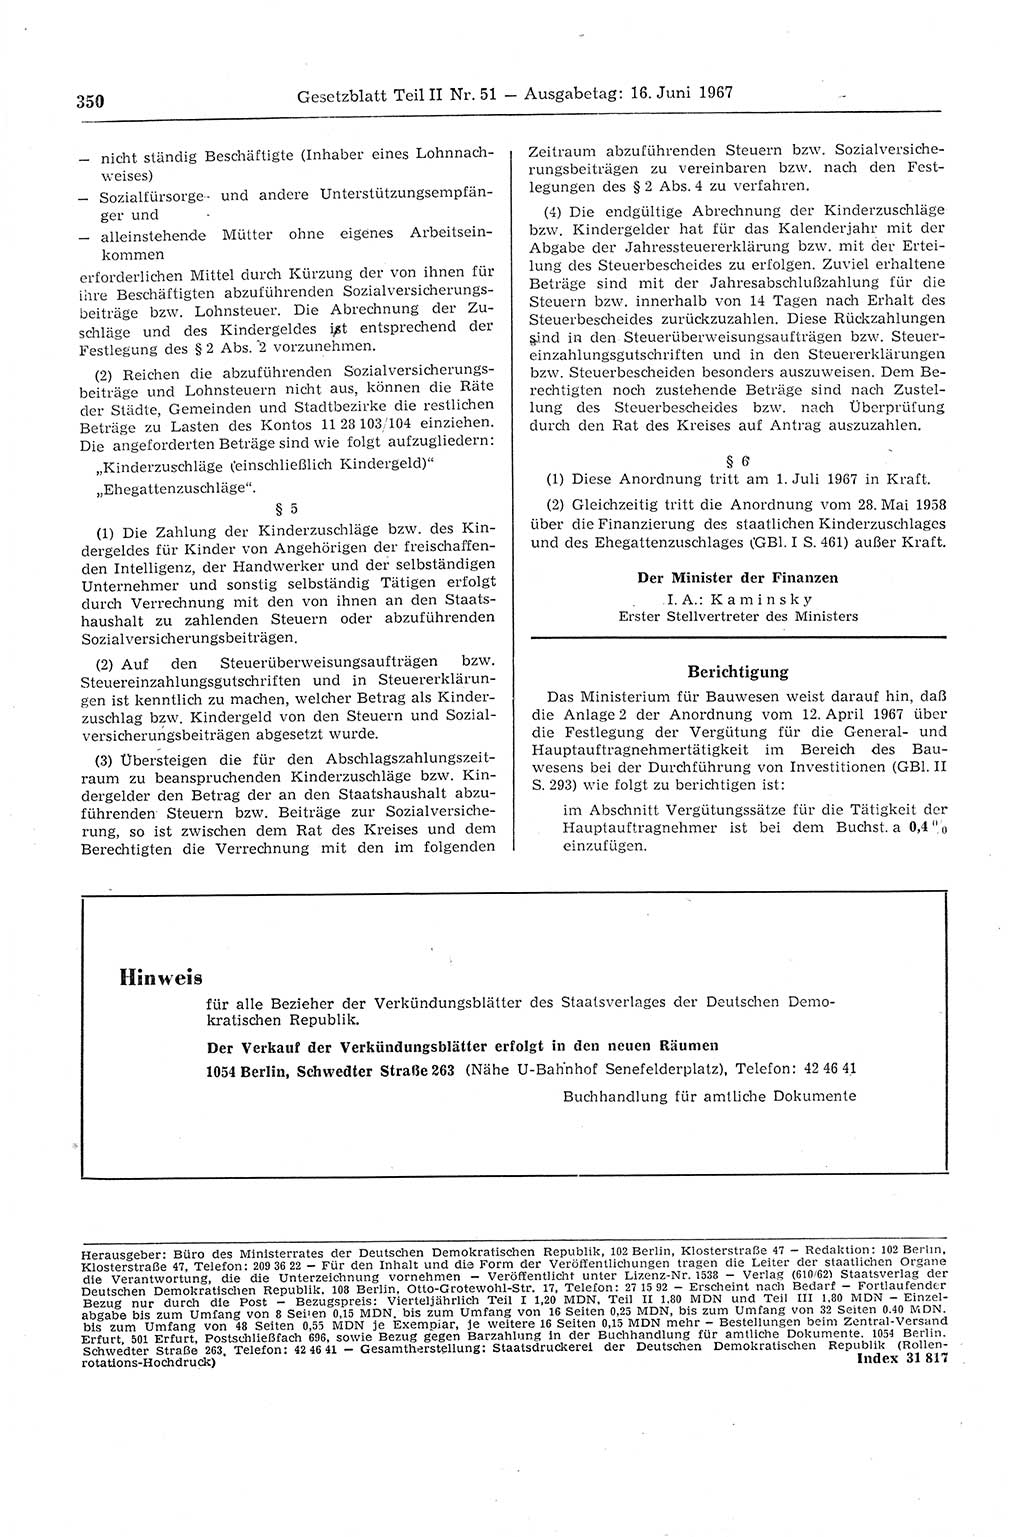 Gesetzblatt (GBl.) der Deutschen Demokratischen Republik (DDR) Teil ⅠⅠ 1967, Seite 350 (GBl. DDR ⅠⅠ 1967, S. 350)